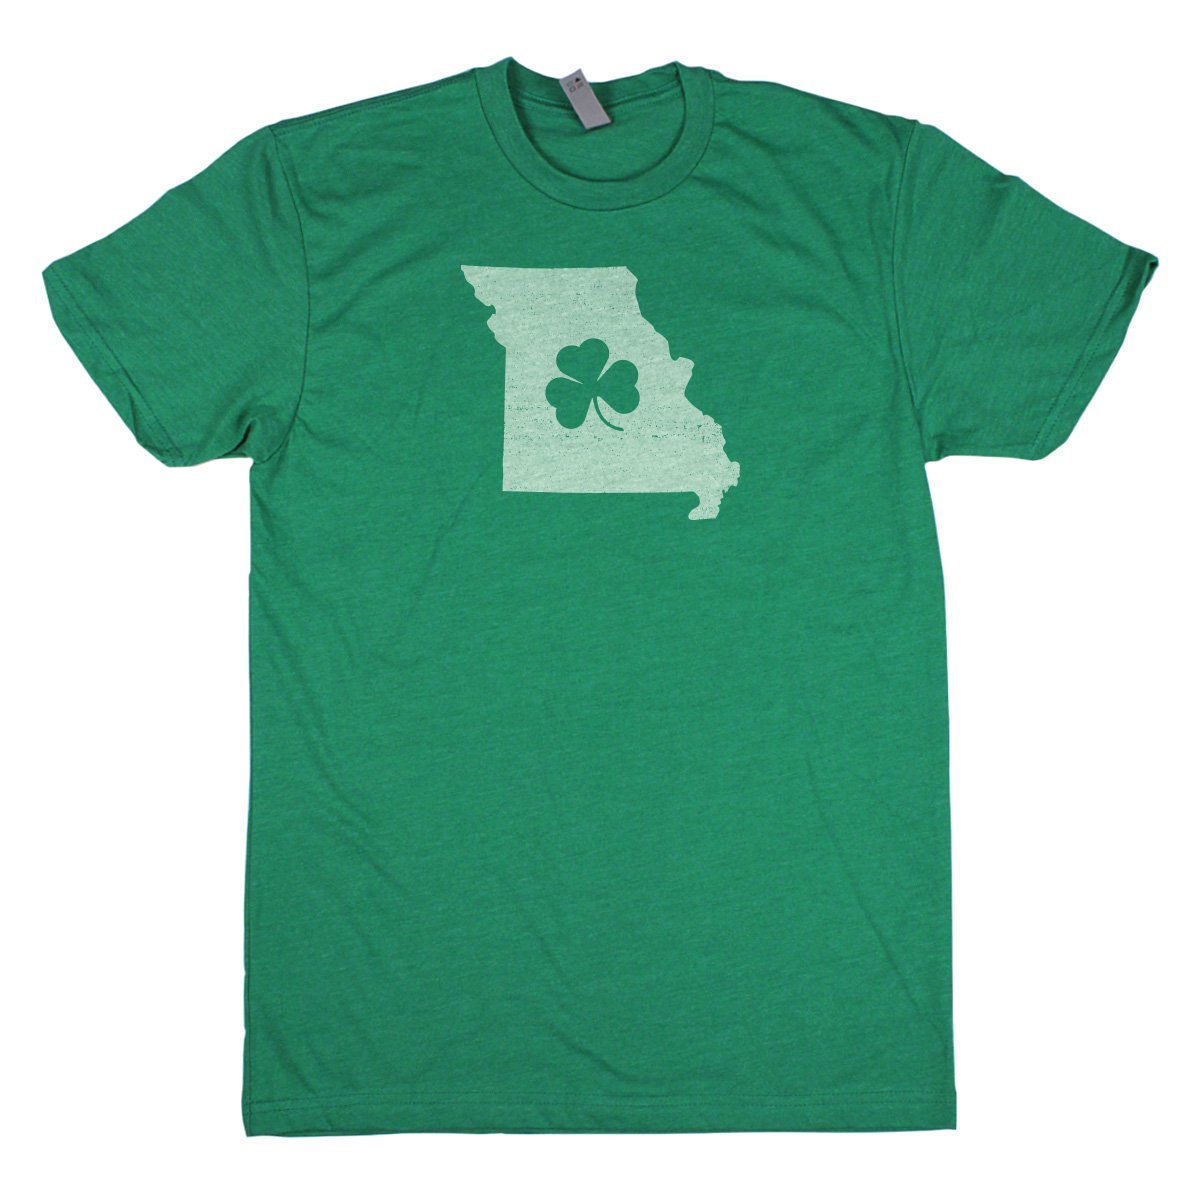 Shamrock Men's Unisex T-Shirt - Arkansas